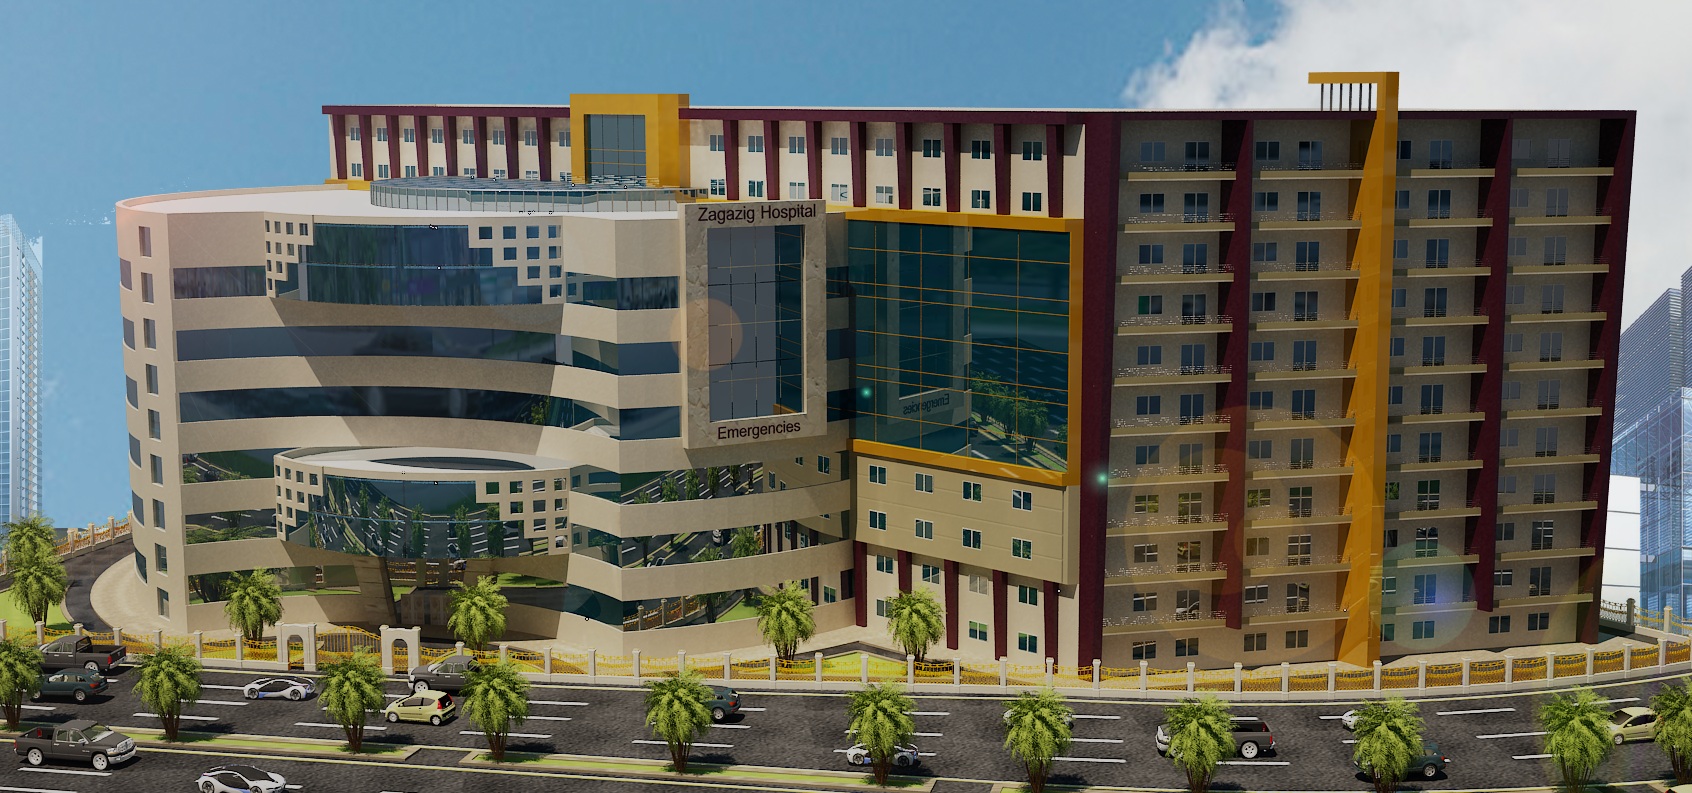 انشاء مستشفى جديد للطوارىء بجامعة الزقازيق